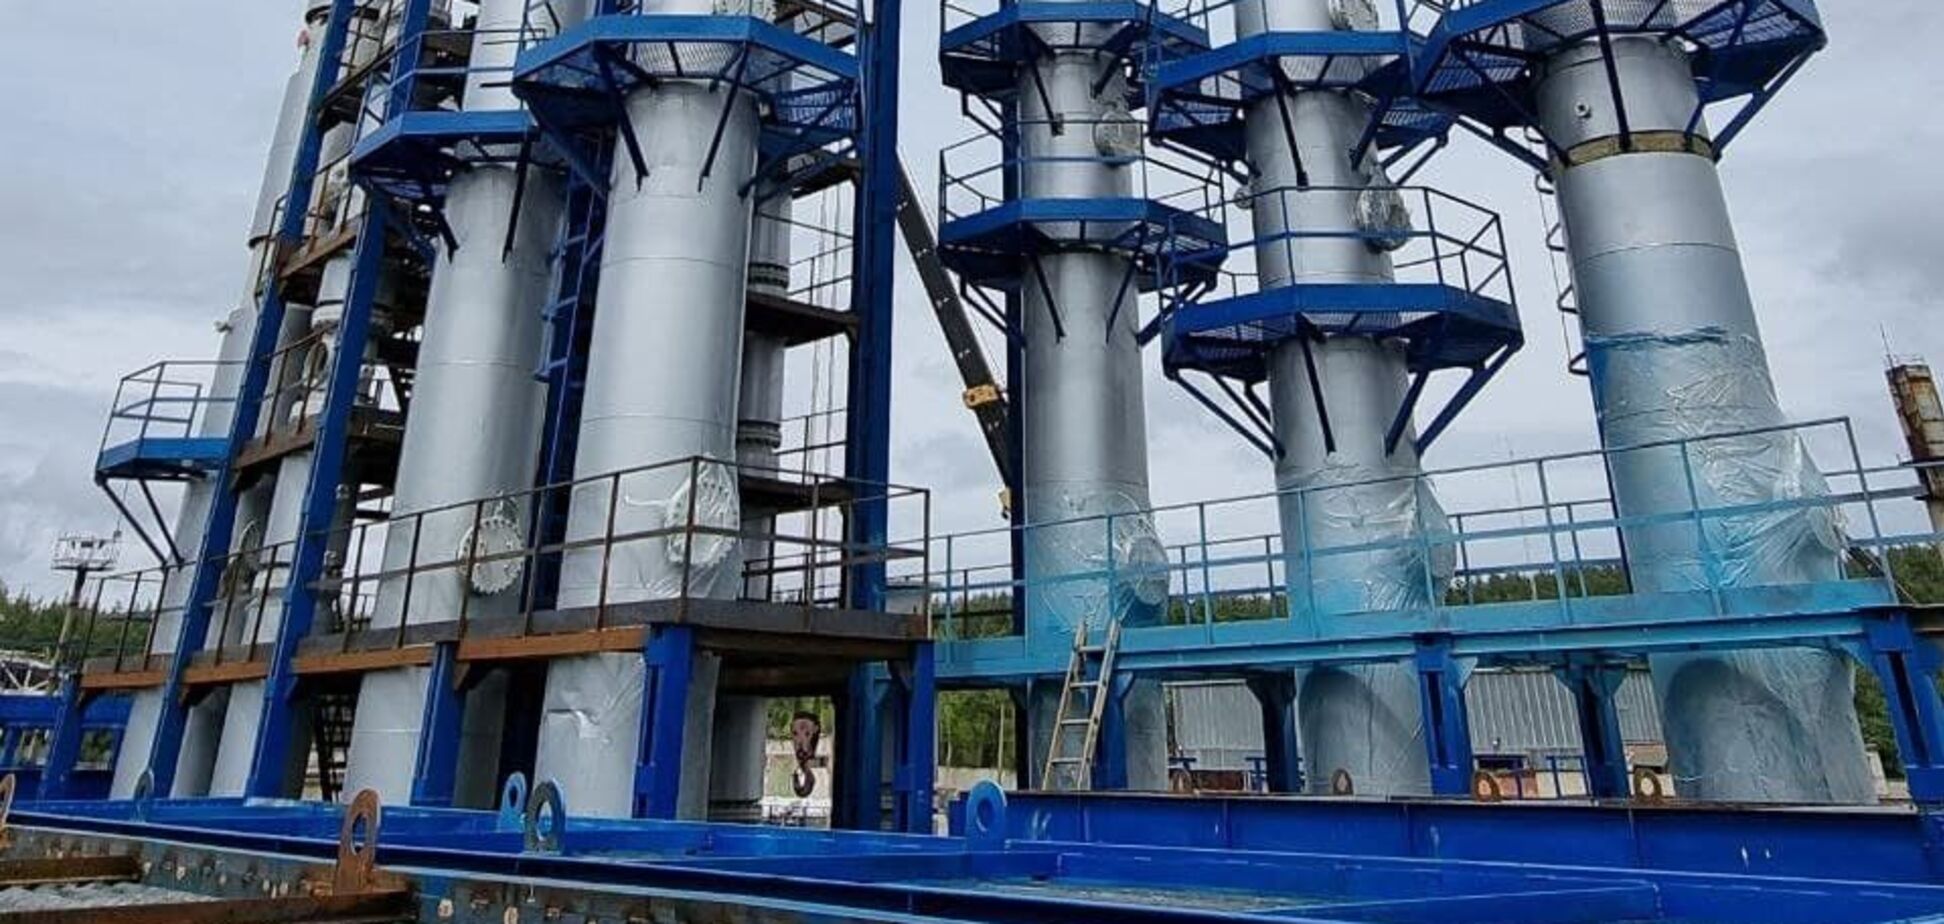 Ukrainian Petroleum анонсировало прорыв в нефтехимической отрасли Украины